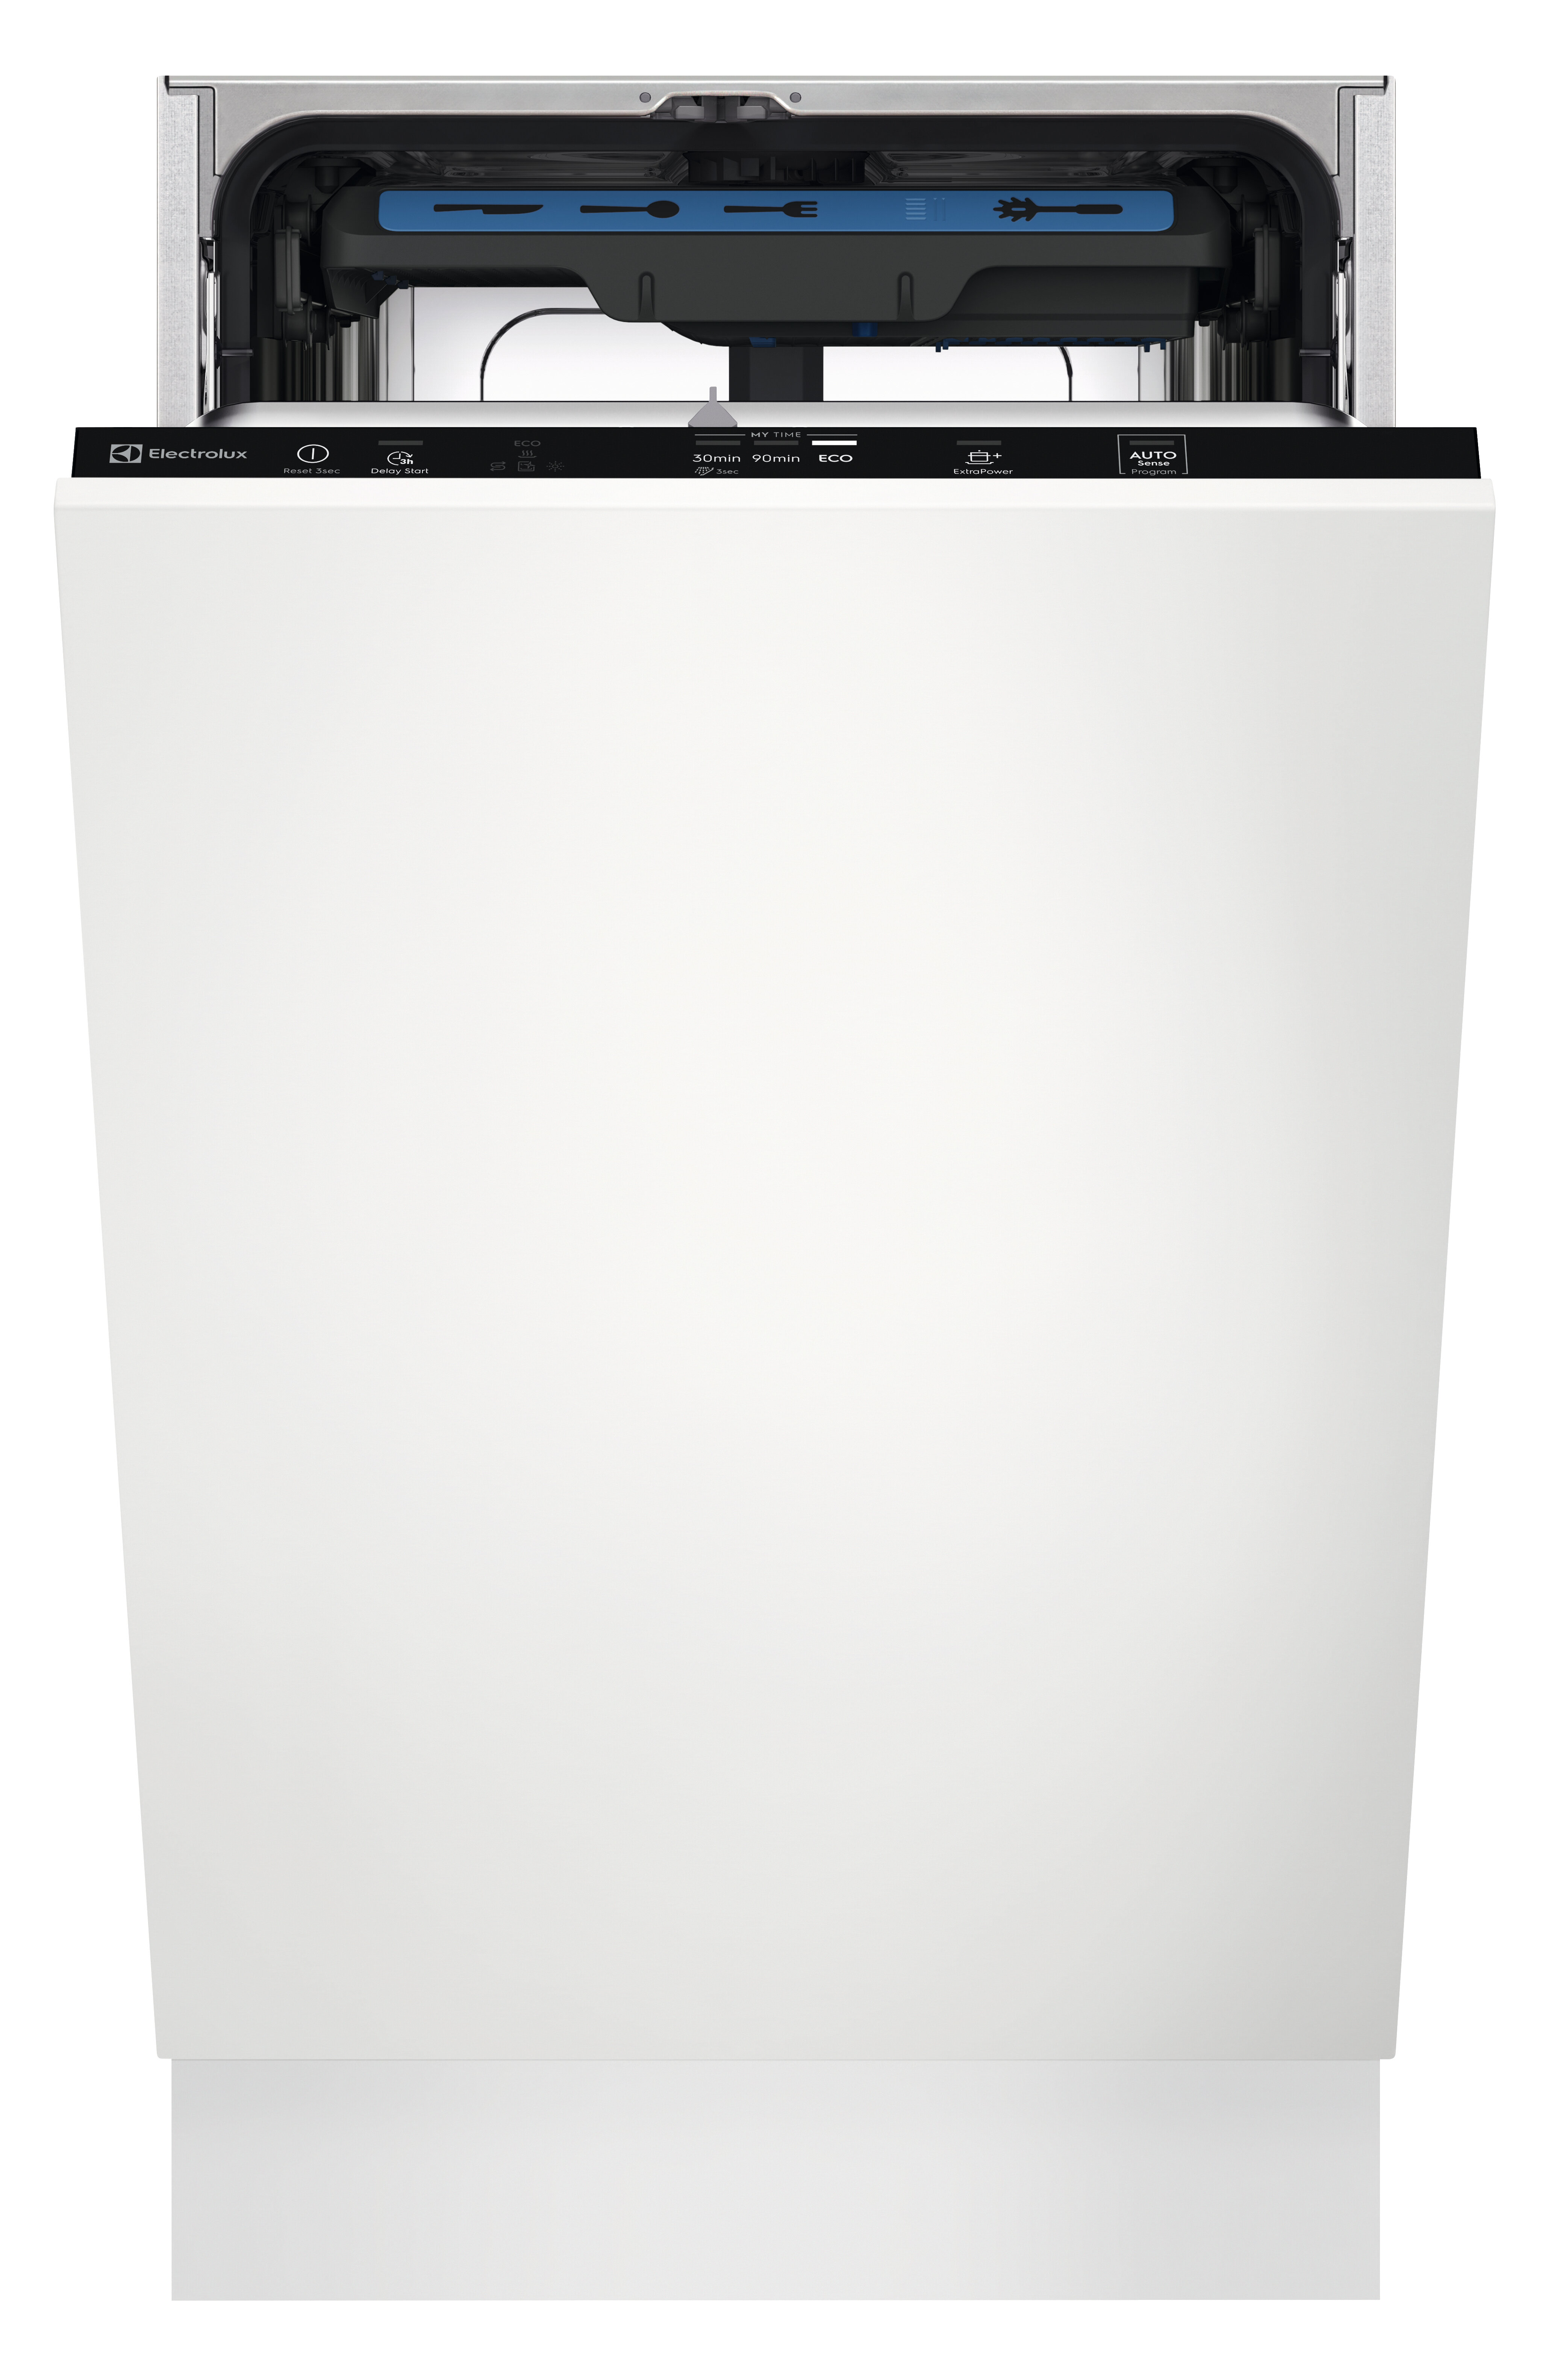 Electrolux Встраиваемые посудомоечные машины ELECTROLUX/ Встраиваемая узкая посудомоечная машина, без фасада, сенсорное управление Quick Select 1, трехцифровой дисплей, 10 комплектов, 6 программ + 3 комбинации (все программы, кроме Предварительное полоска